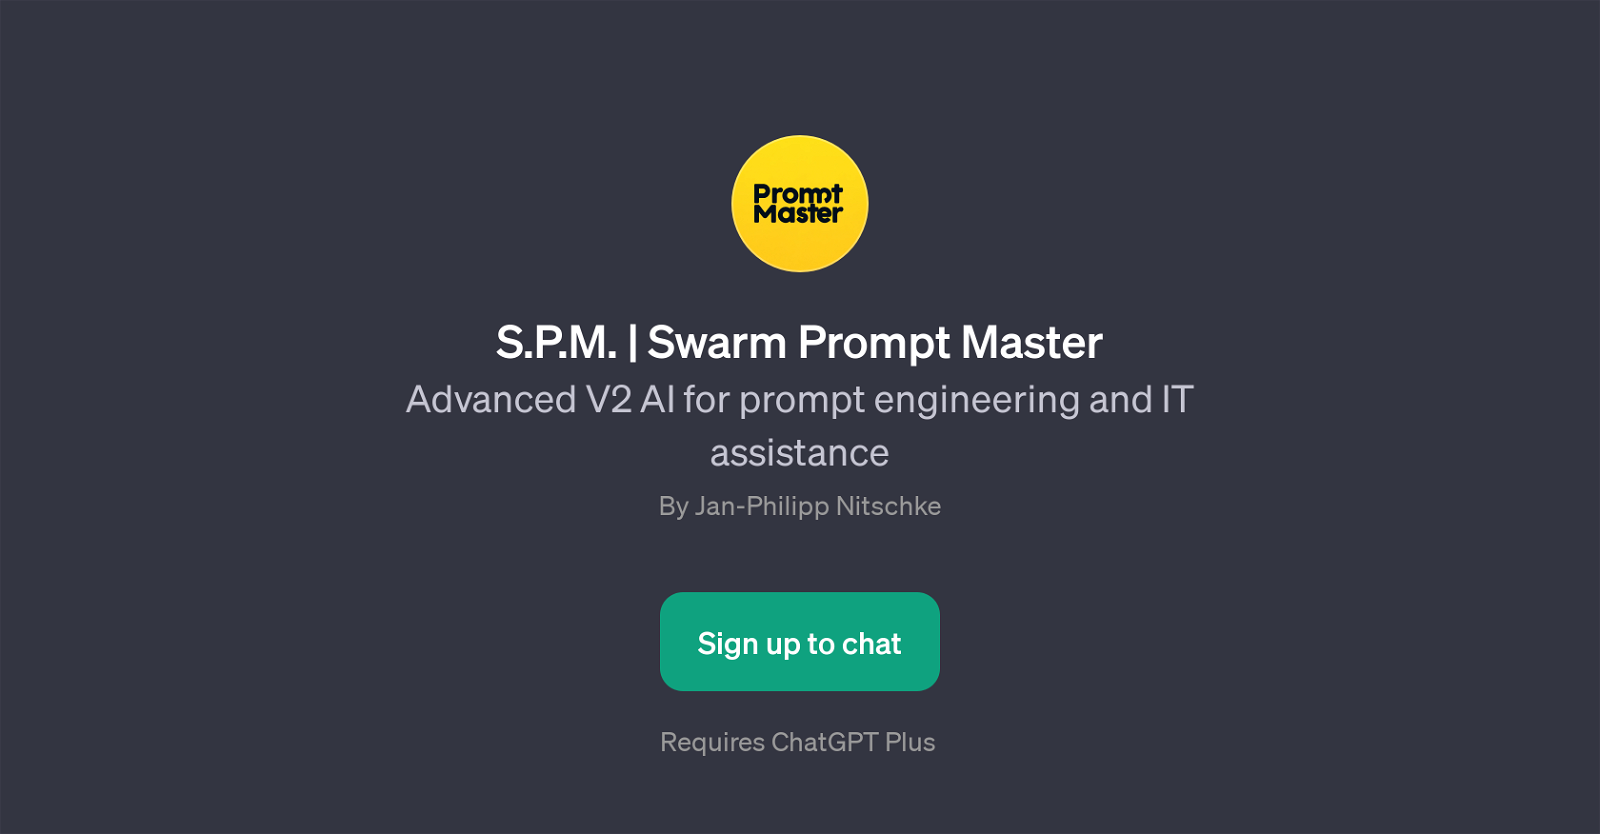 S.P.M. | Swarm Prompt Master website